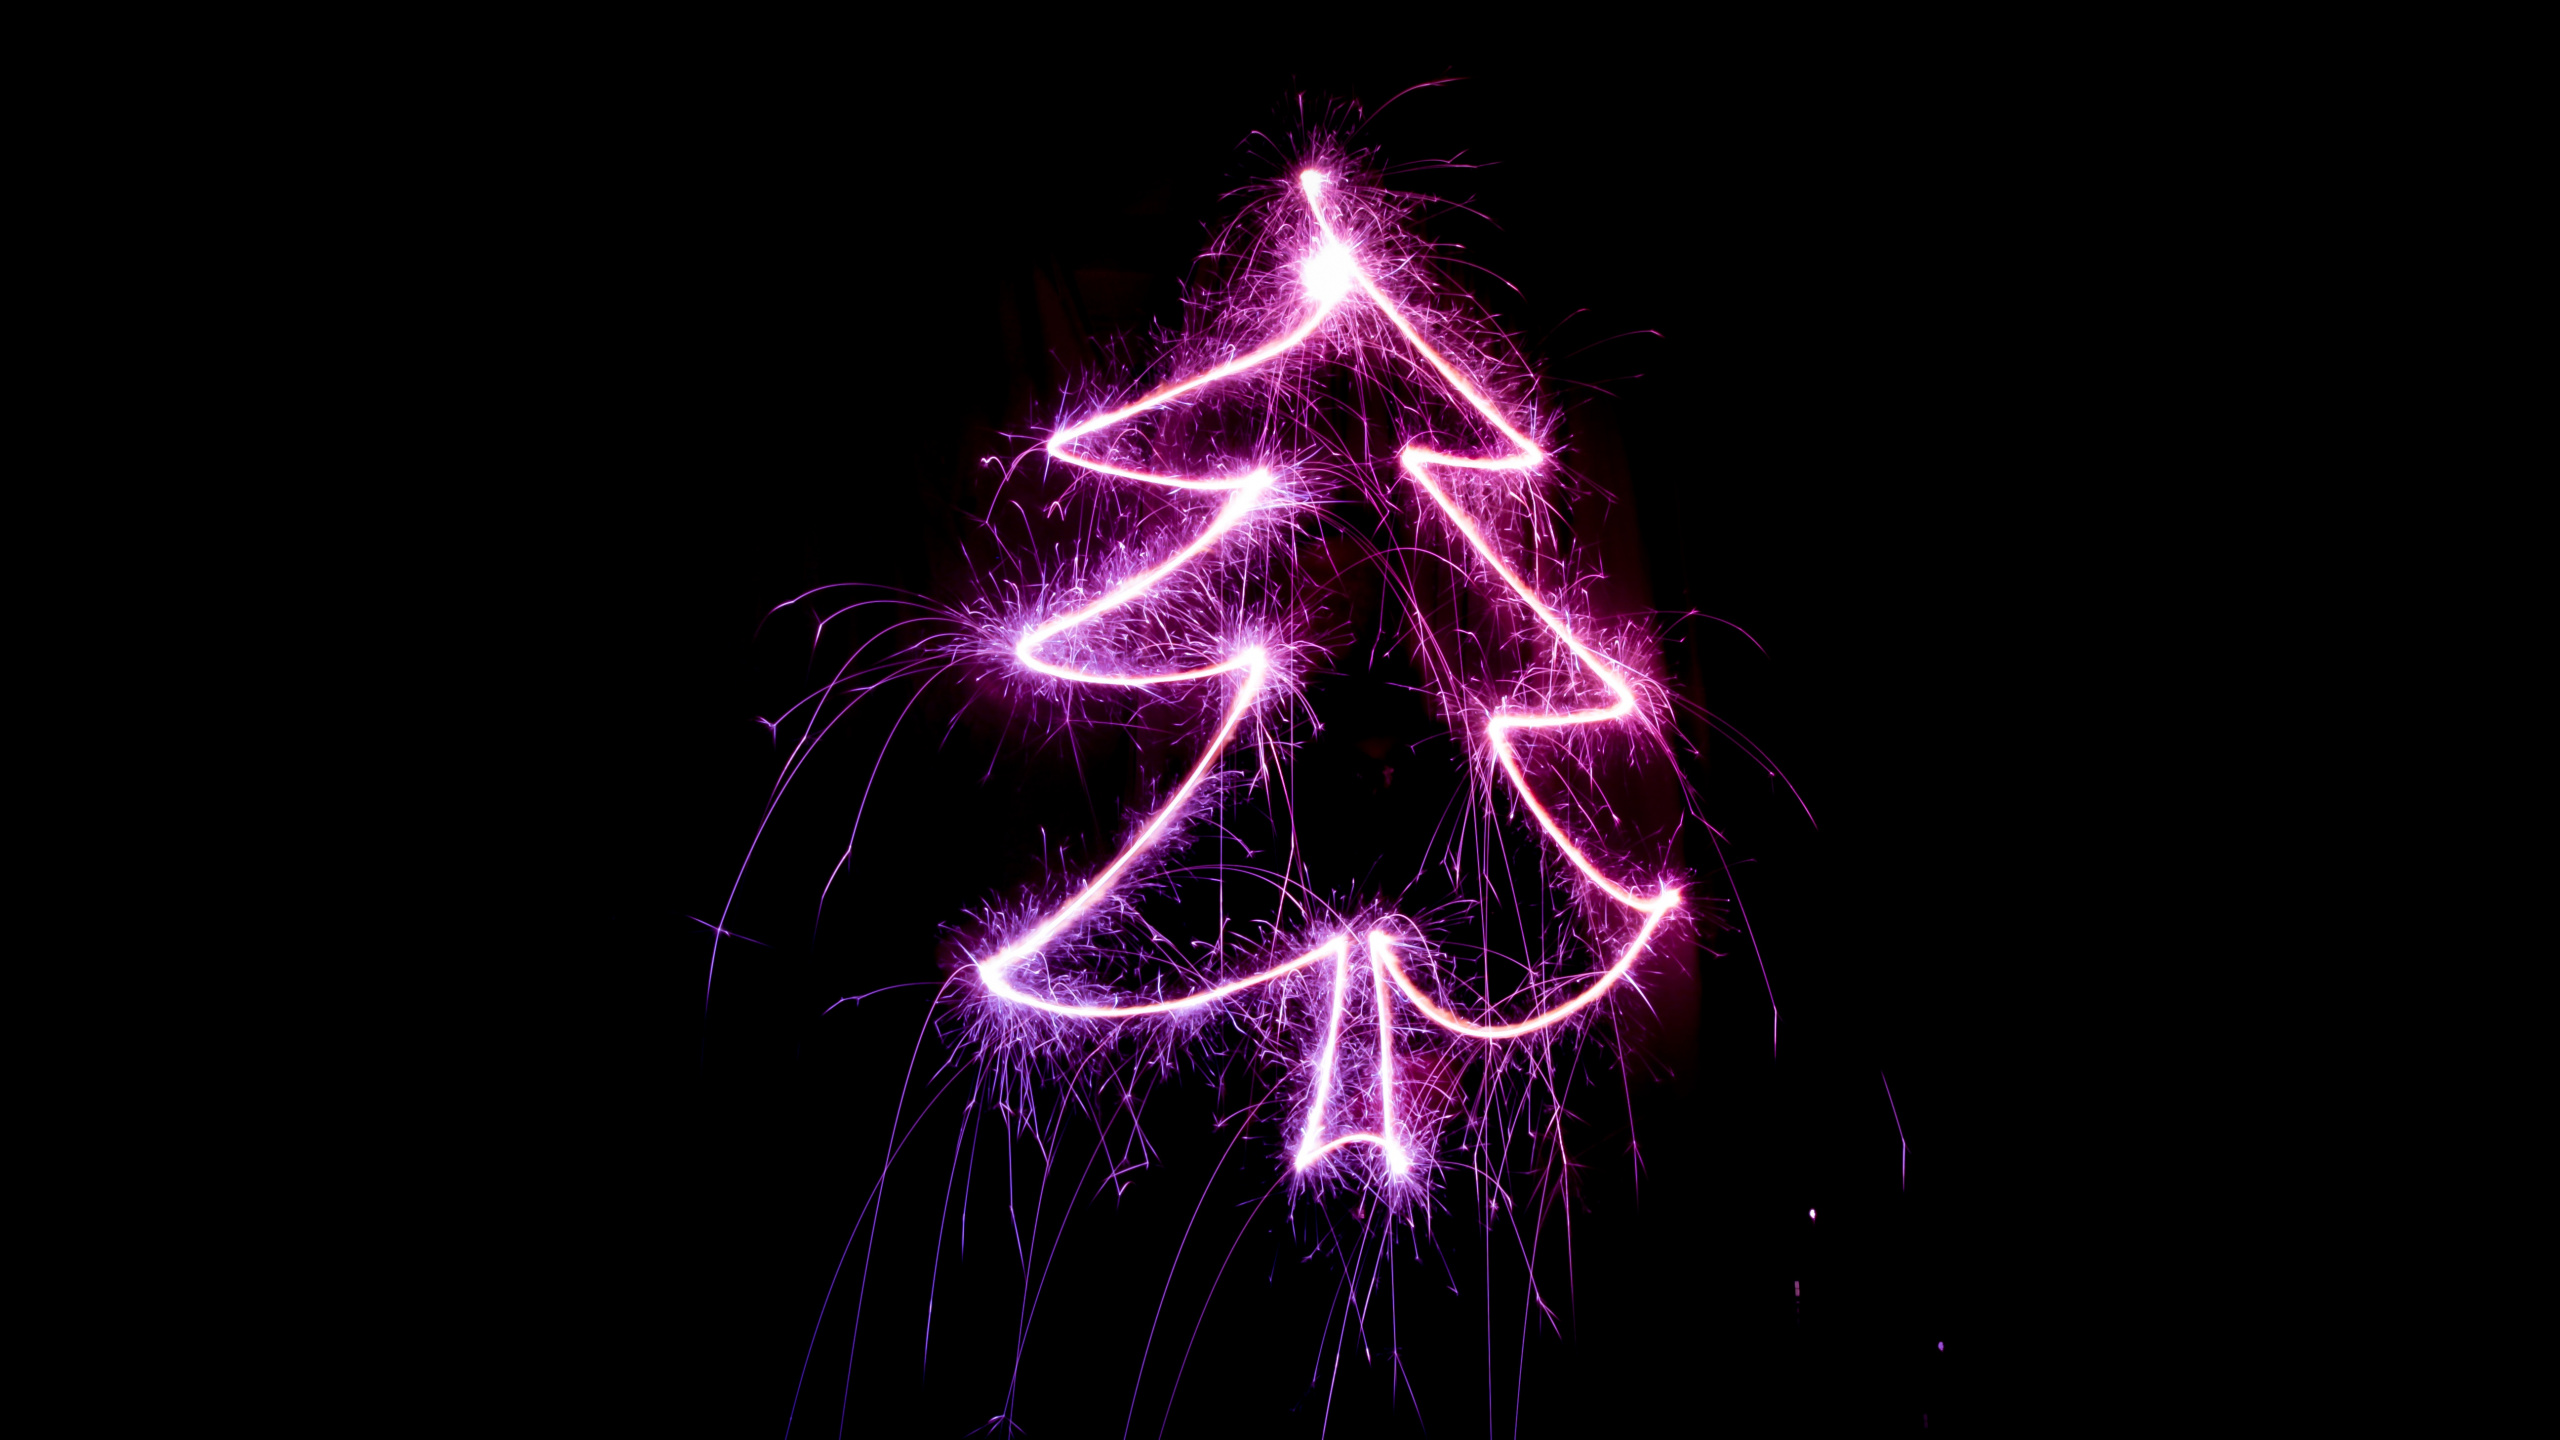 Weihnachten, Weihnachtsbaum, Purpur, Veilchen, Licht. Wallpaper in 2560x1440 Resolution